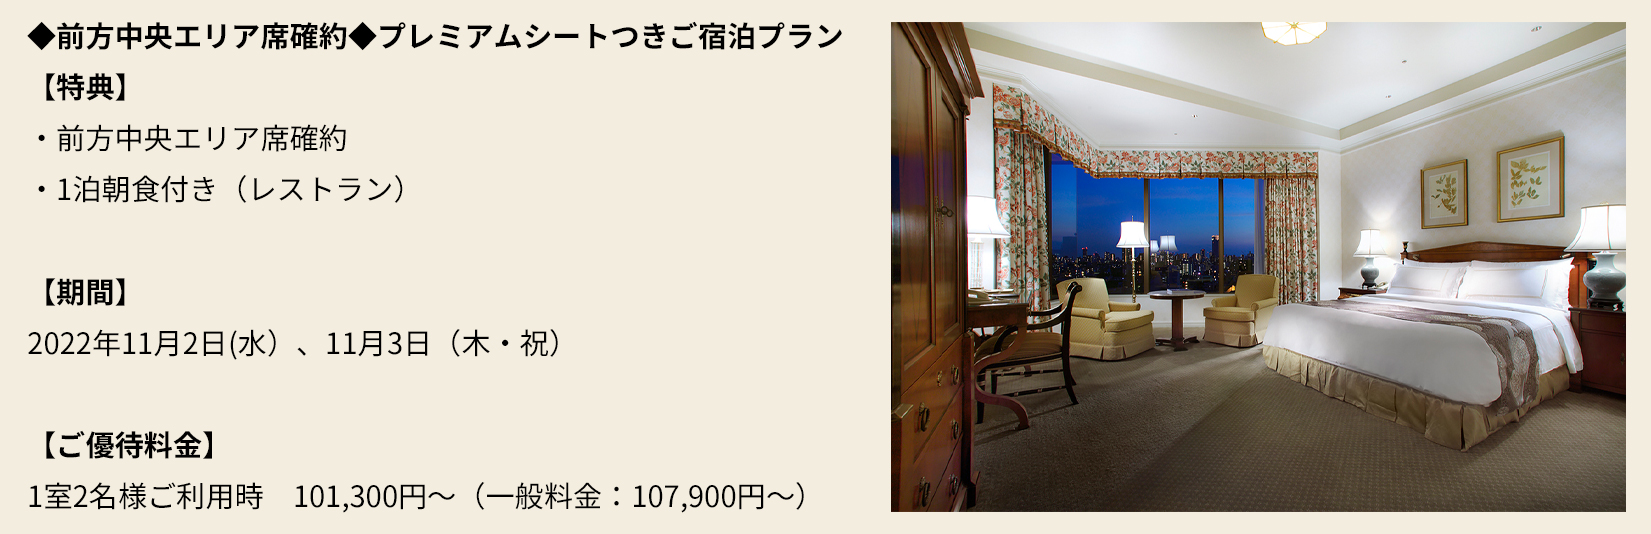 西日本産 ホテル椿山荘ご招待券 1泊2名ご宿泊orディナーコース2名